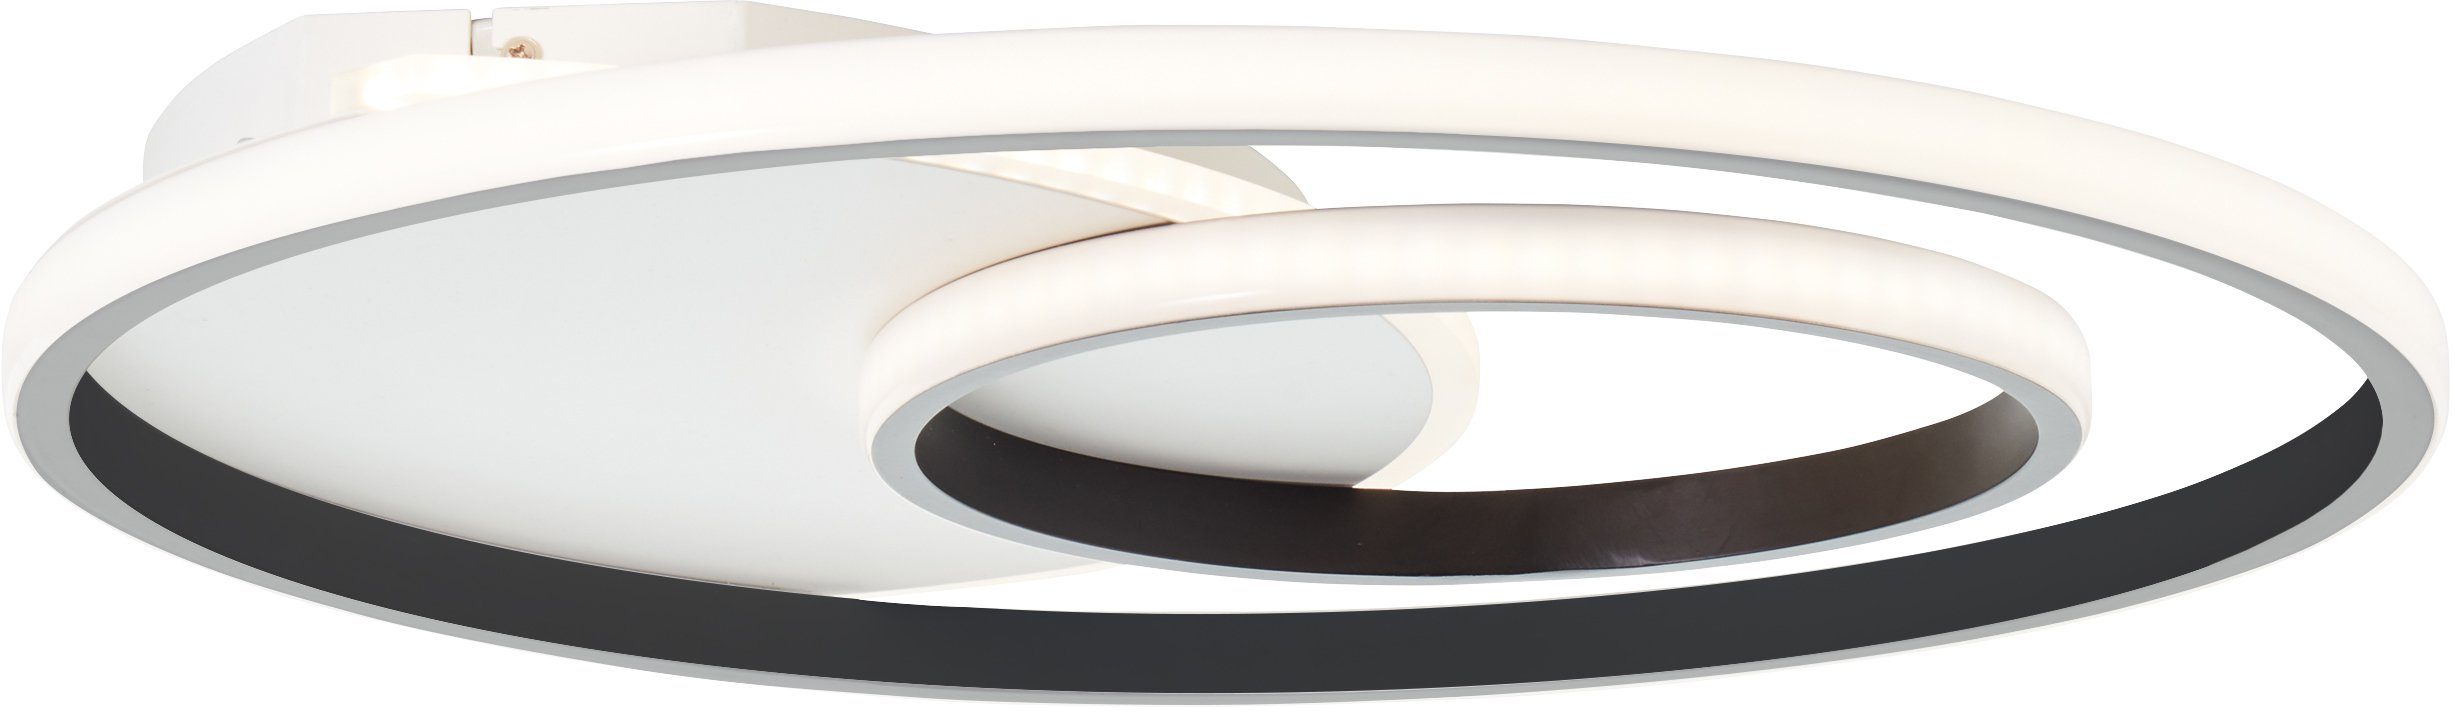 Metall/Kunststof weiß/schwarz, Merapi Lampe, Deckenleuchte Brilliant 51x51cm LED Deckenleuchte Merapi, 3000K,